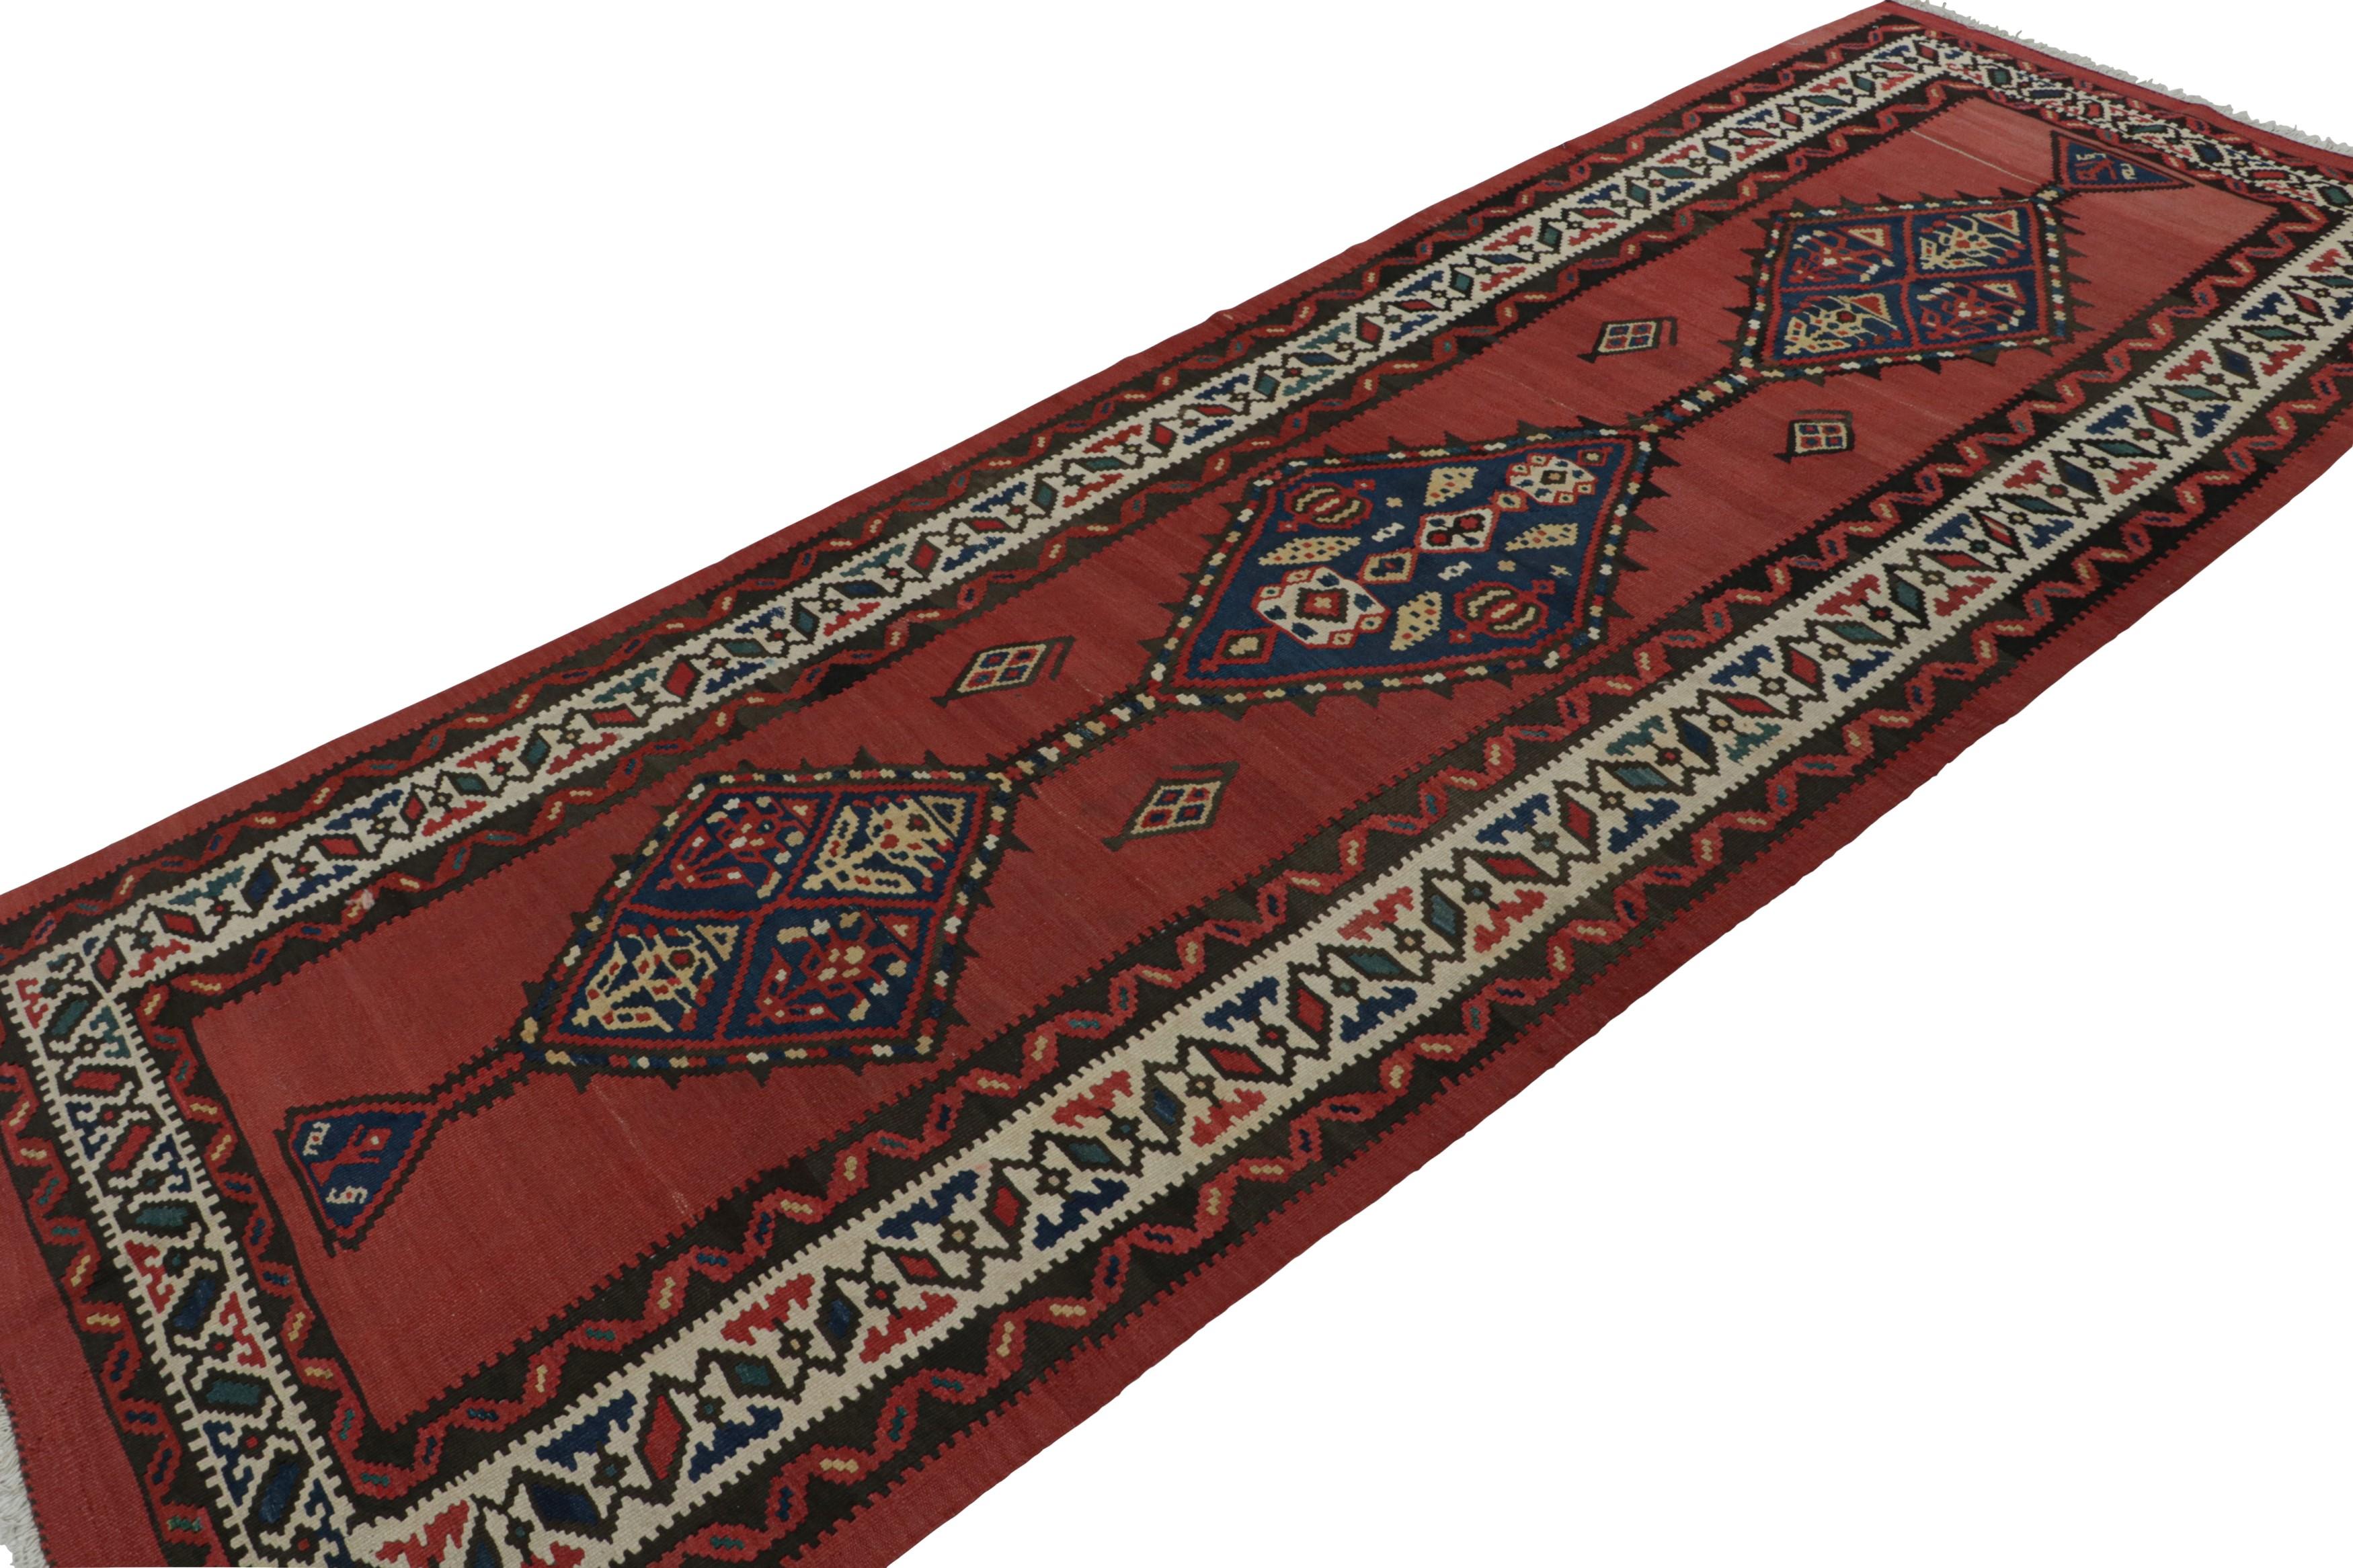 Dieser handgewebte Wollteppich (ca. 1950-1960) im Format 5 x 12 cm aus einem persischen Stammes-Kilim zeichnet sich durch detaillierte geometrische Muster in Beige/Braun und Blau in den Bordüren und Medaillons sowie durch ein sattes rotes Feld aus.